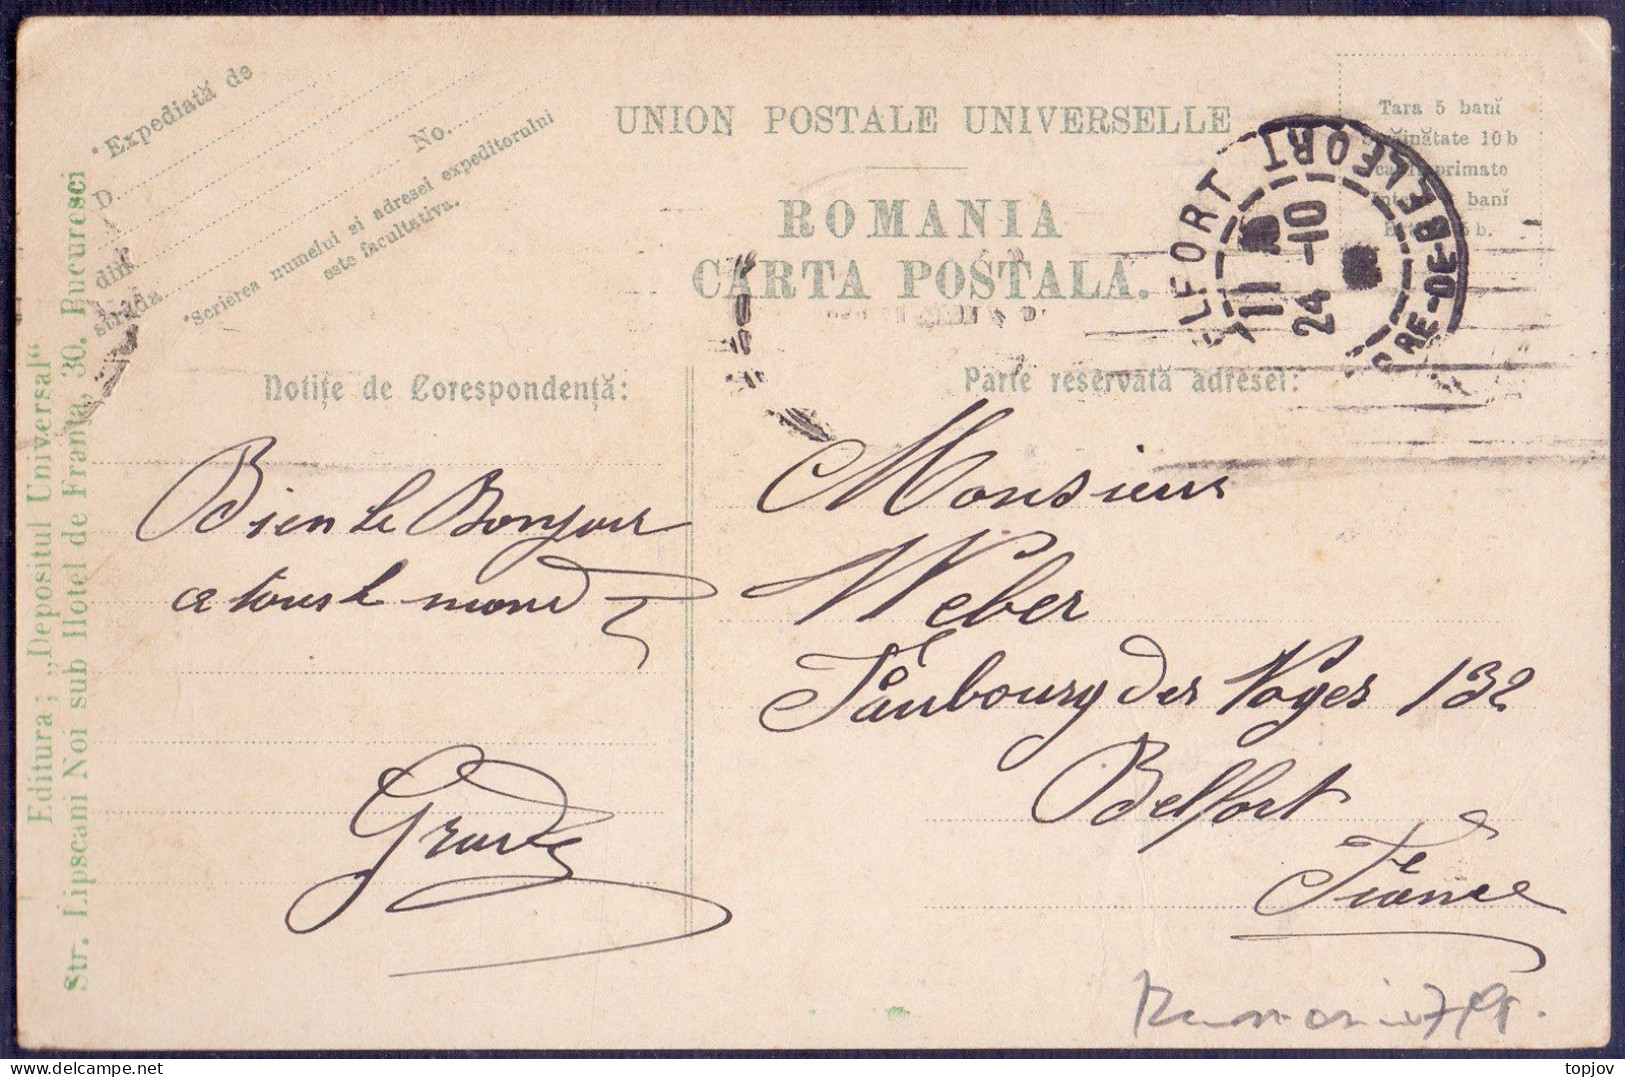 ROMANIA - TIGANI SPOITORI - SALUTARI Din ROMANIA - 1910 - Roumanie